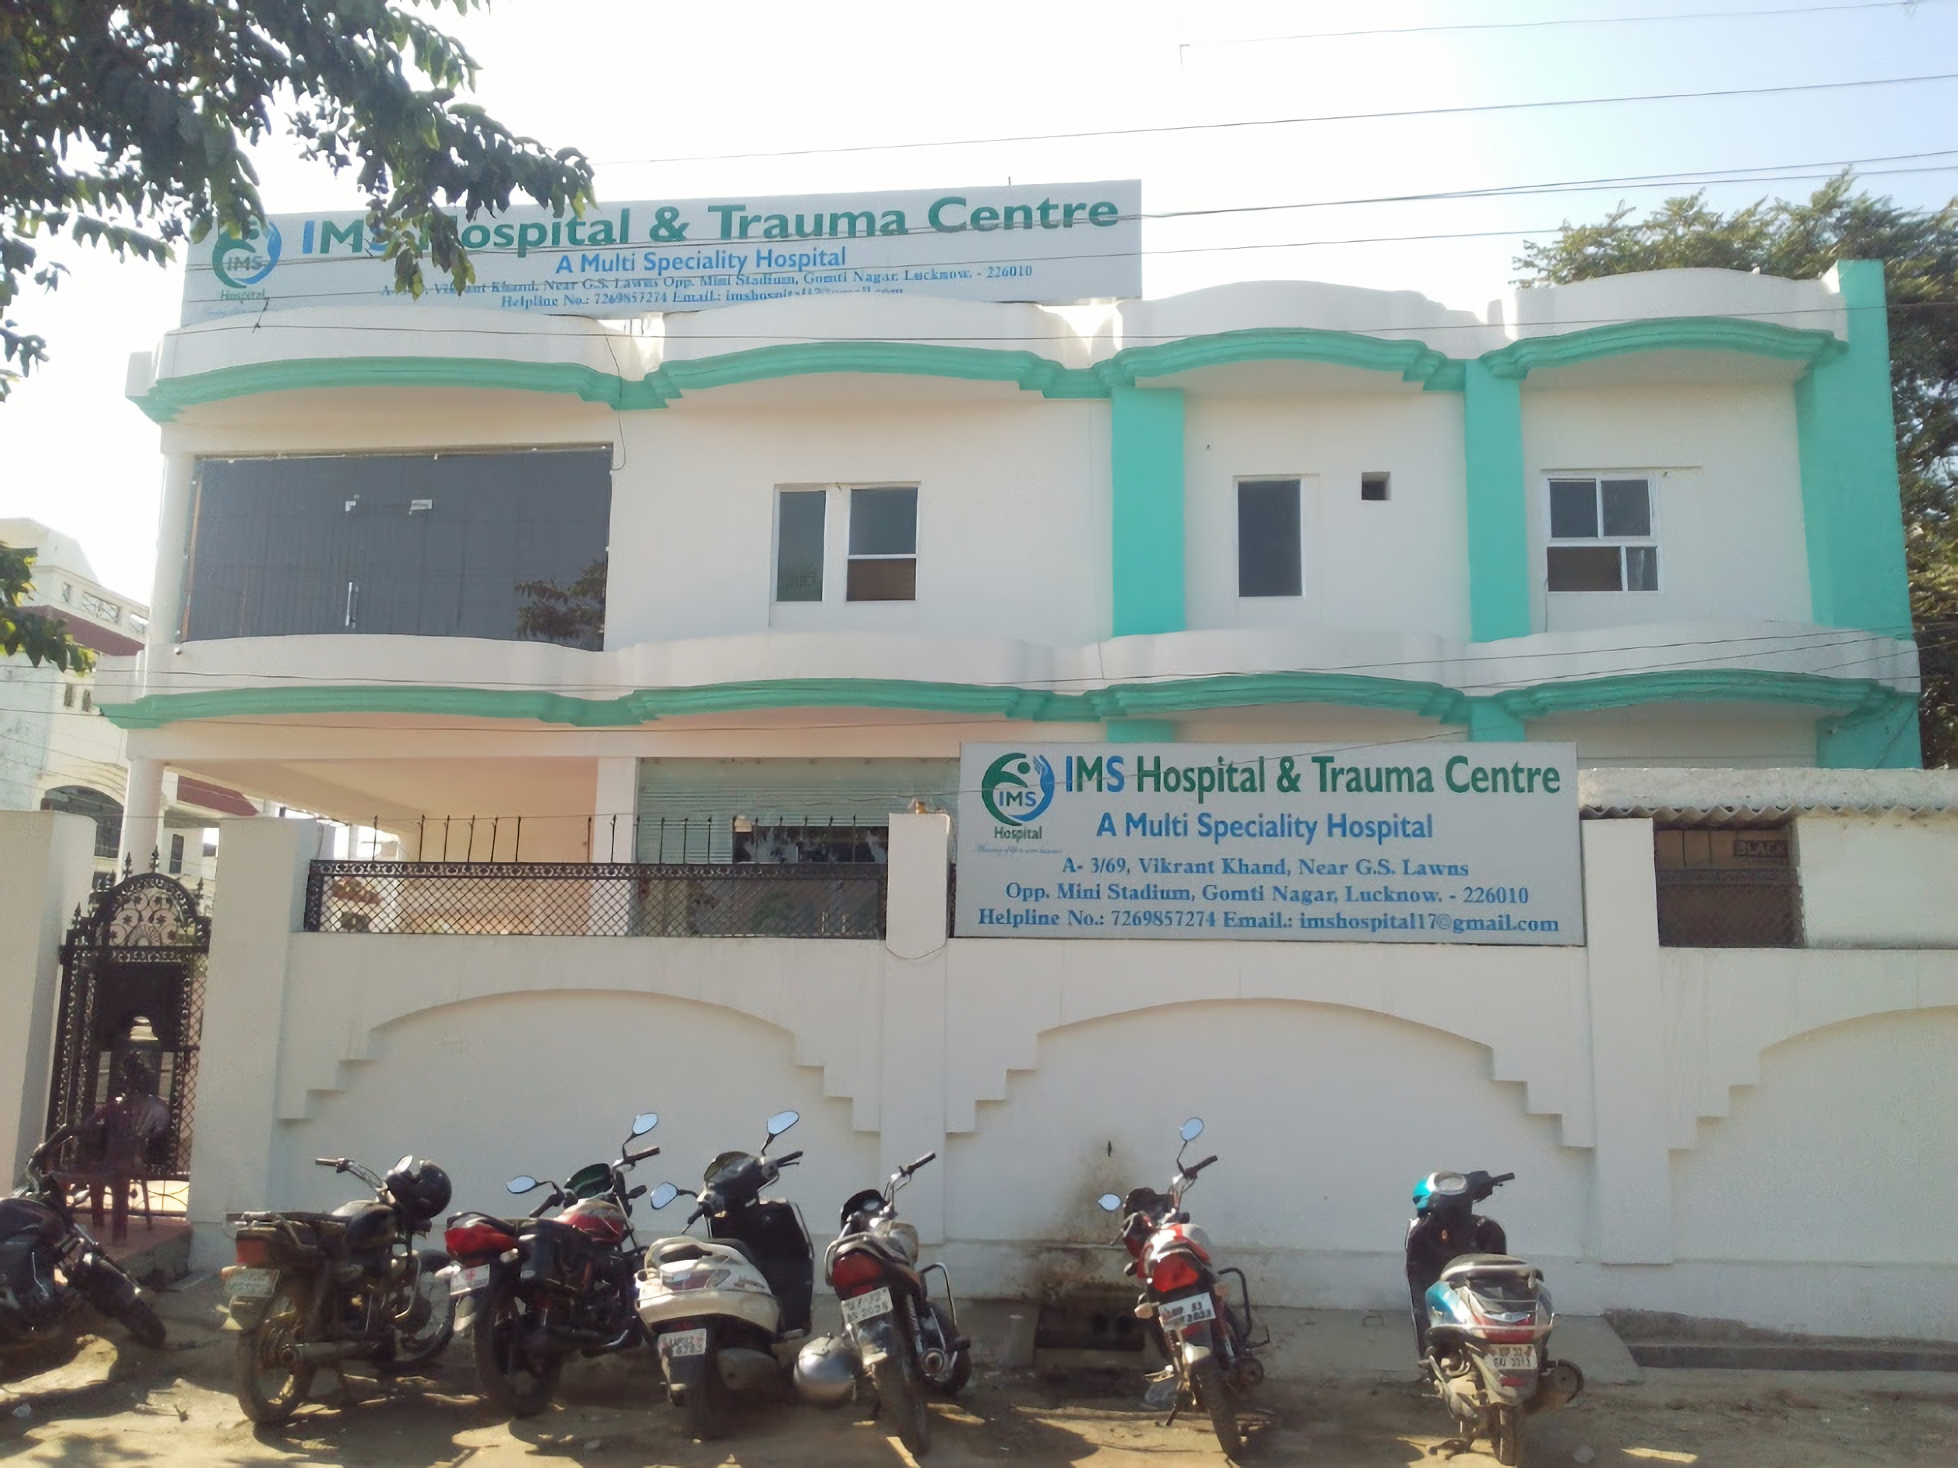 IMS Hospital & Trauma Centre